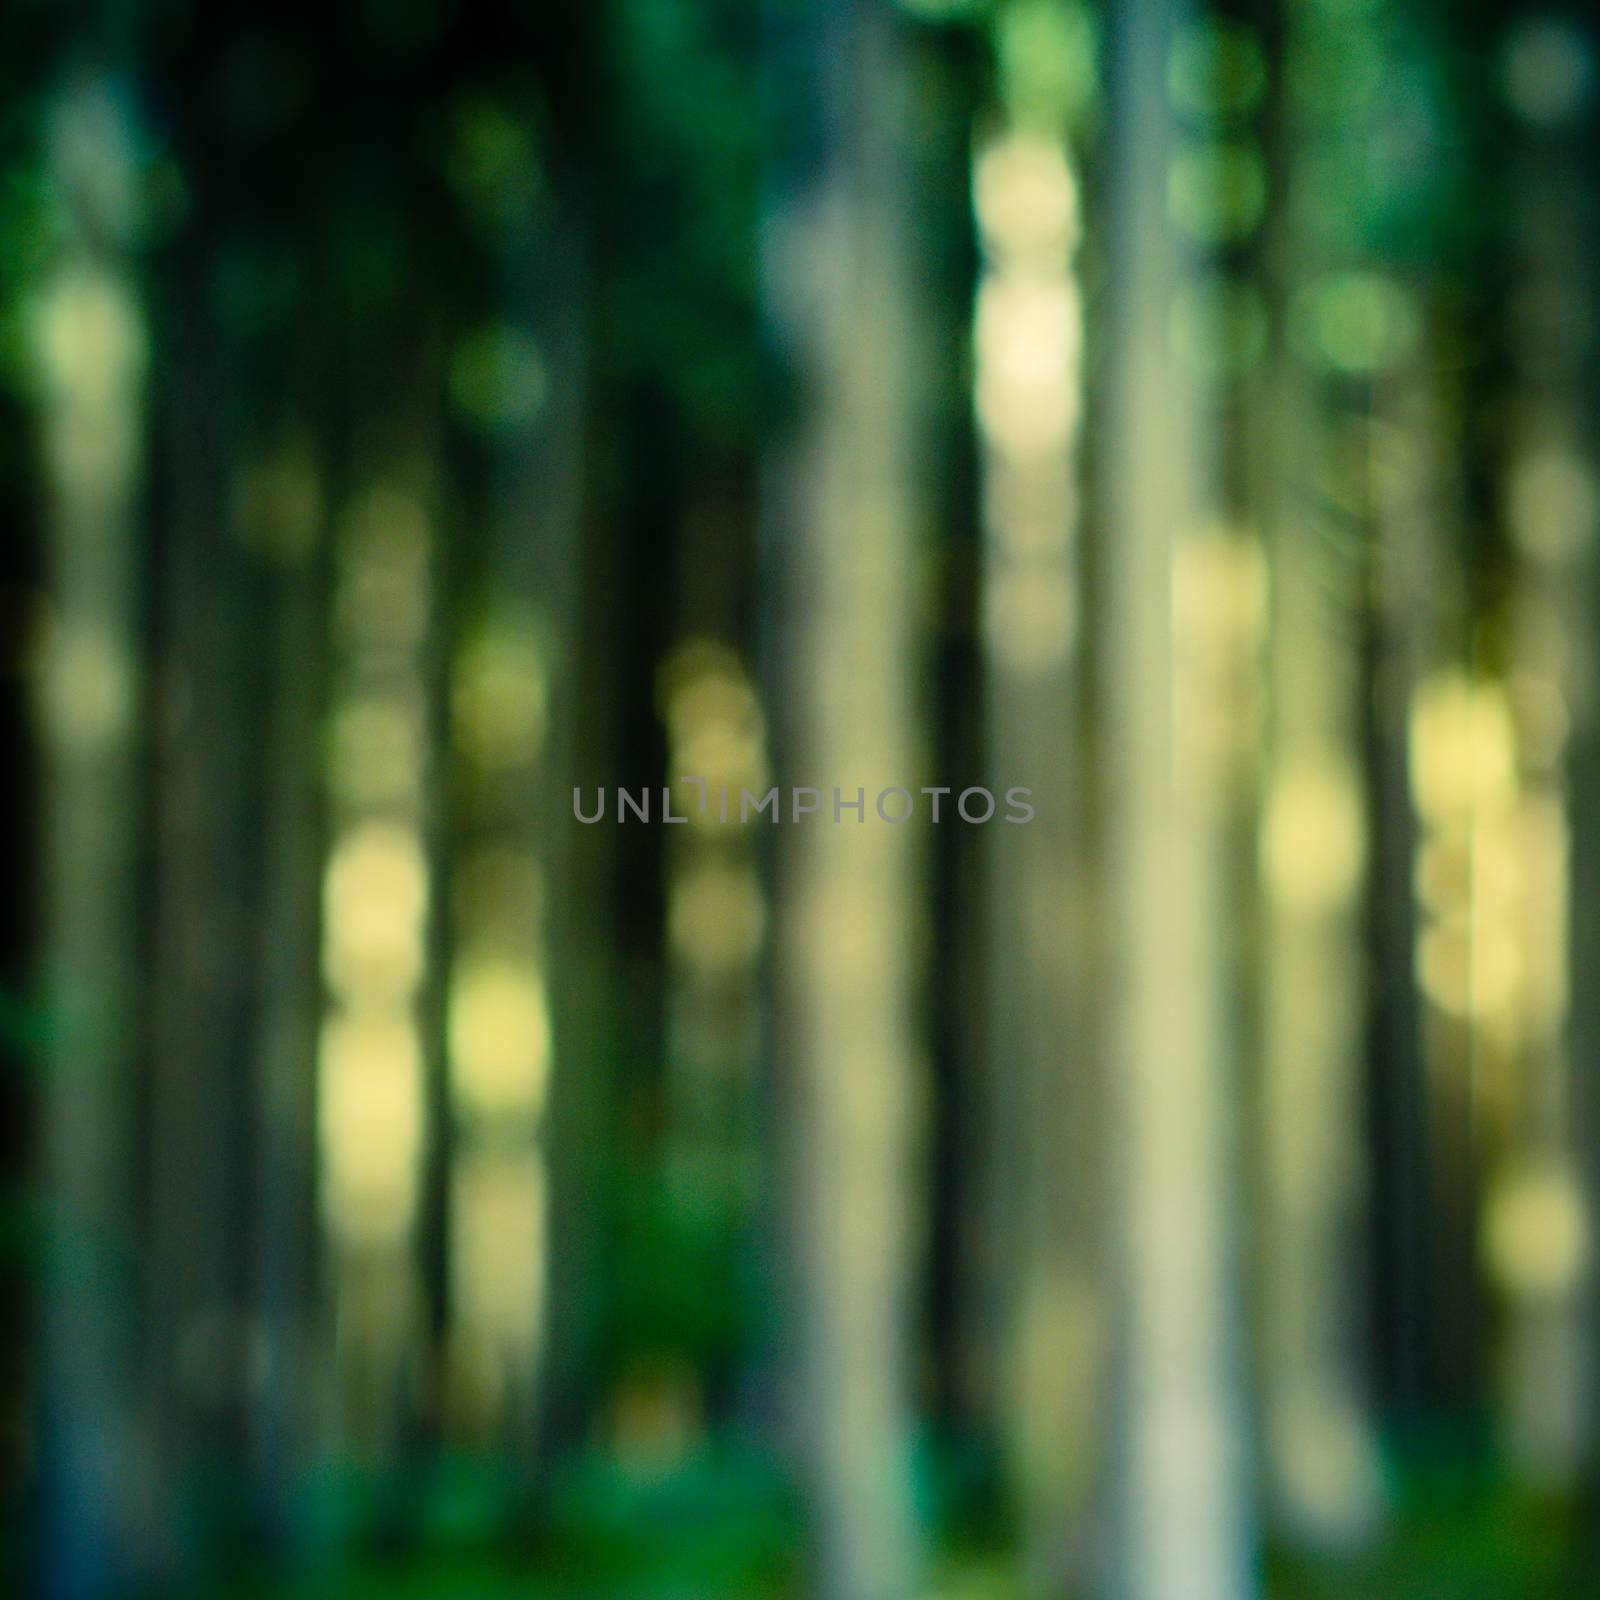 Retro Defocused Photo Of Sunlight Through Forest Trees